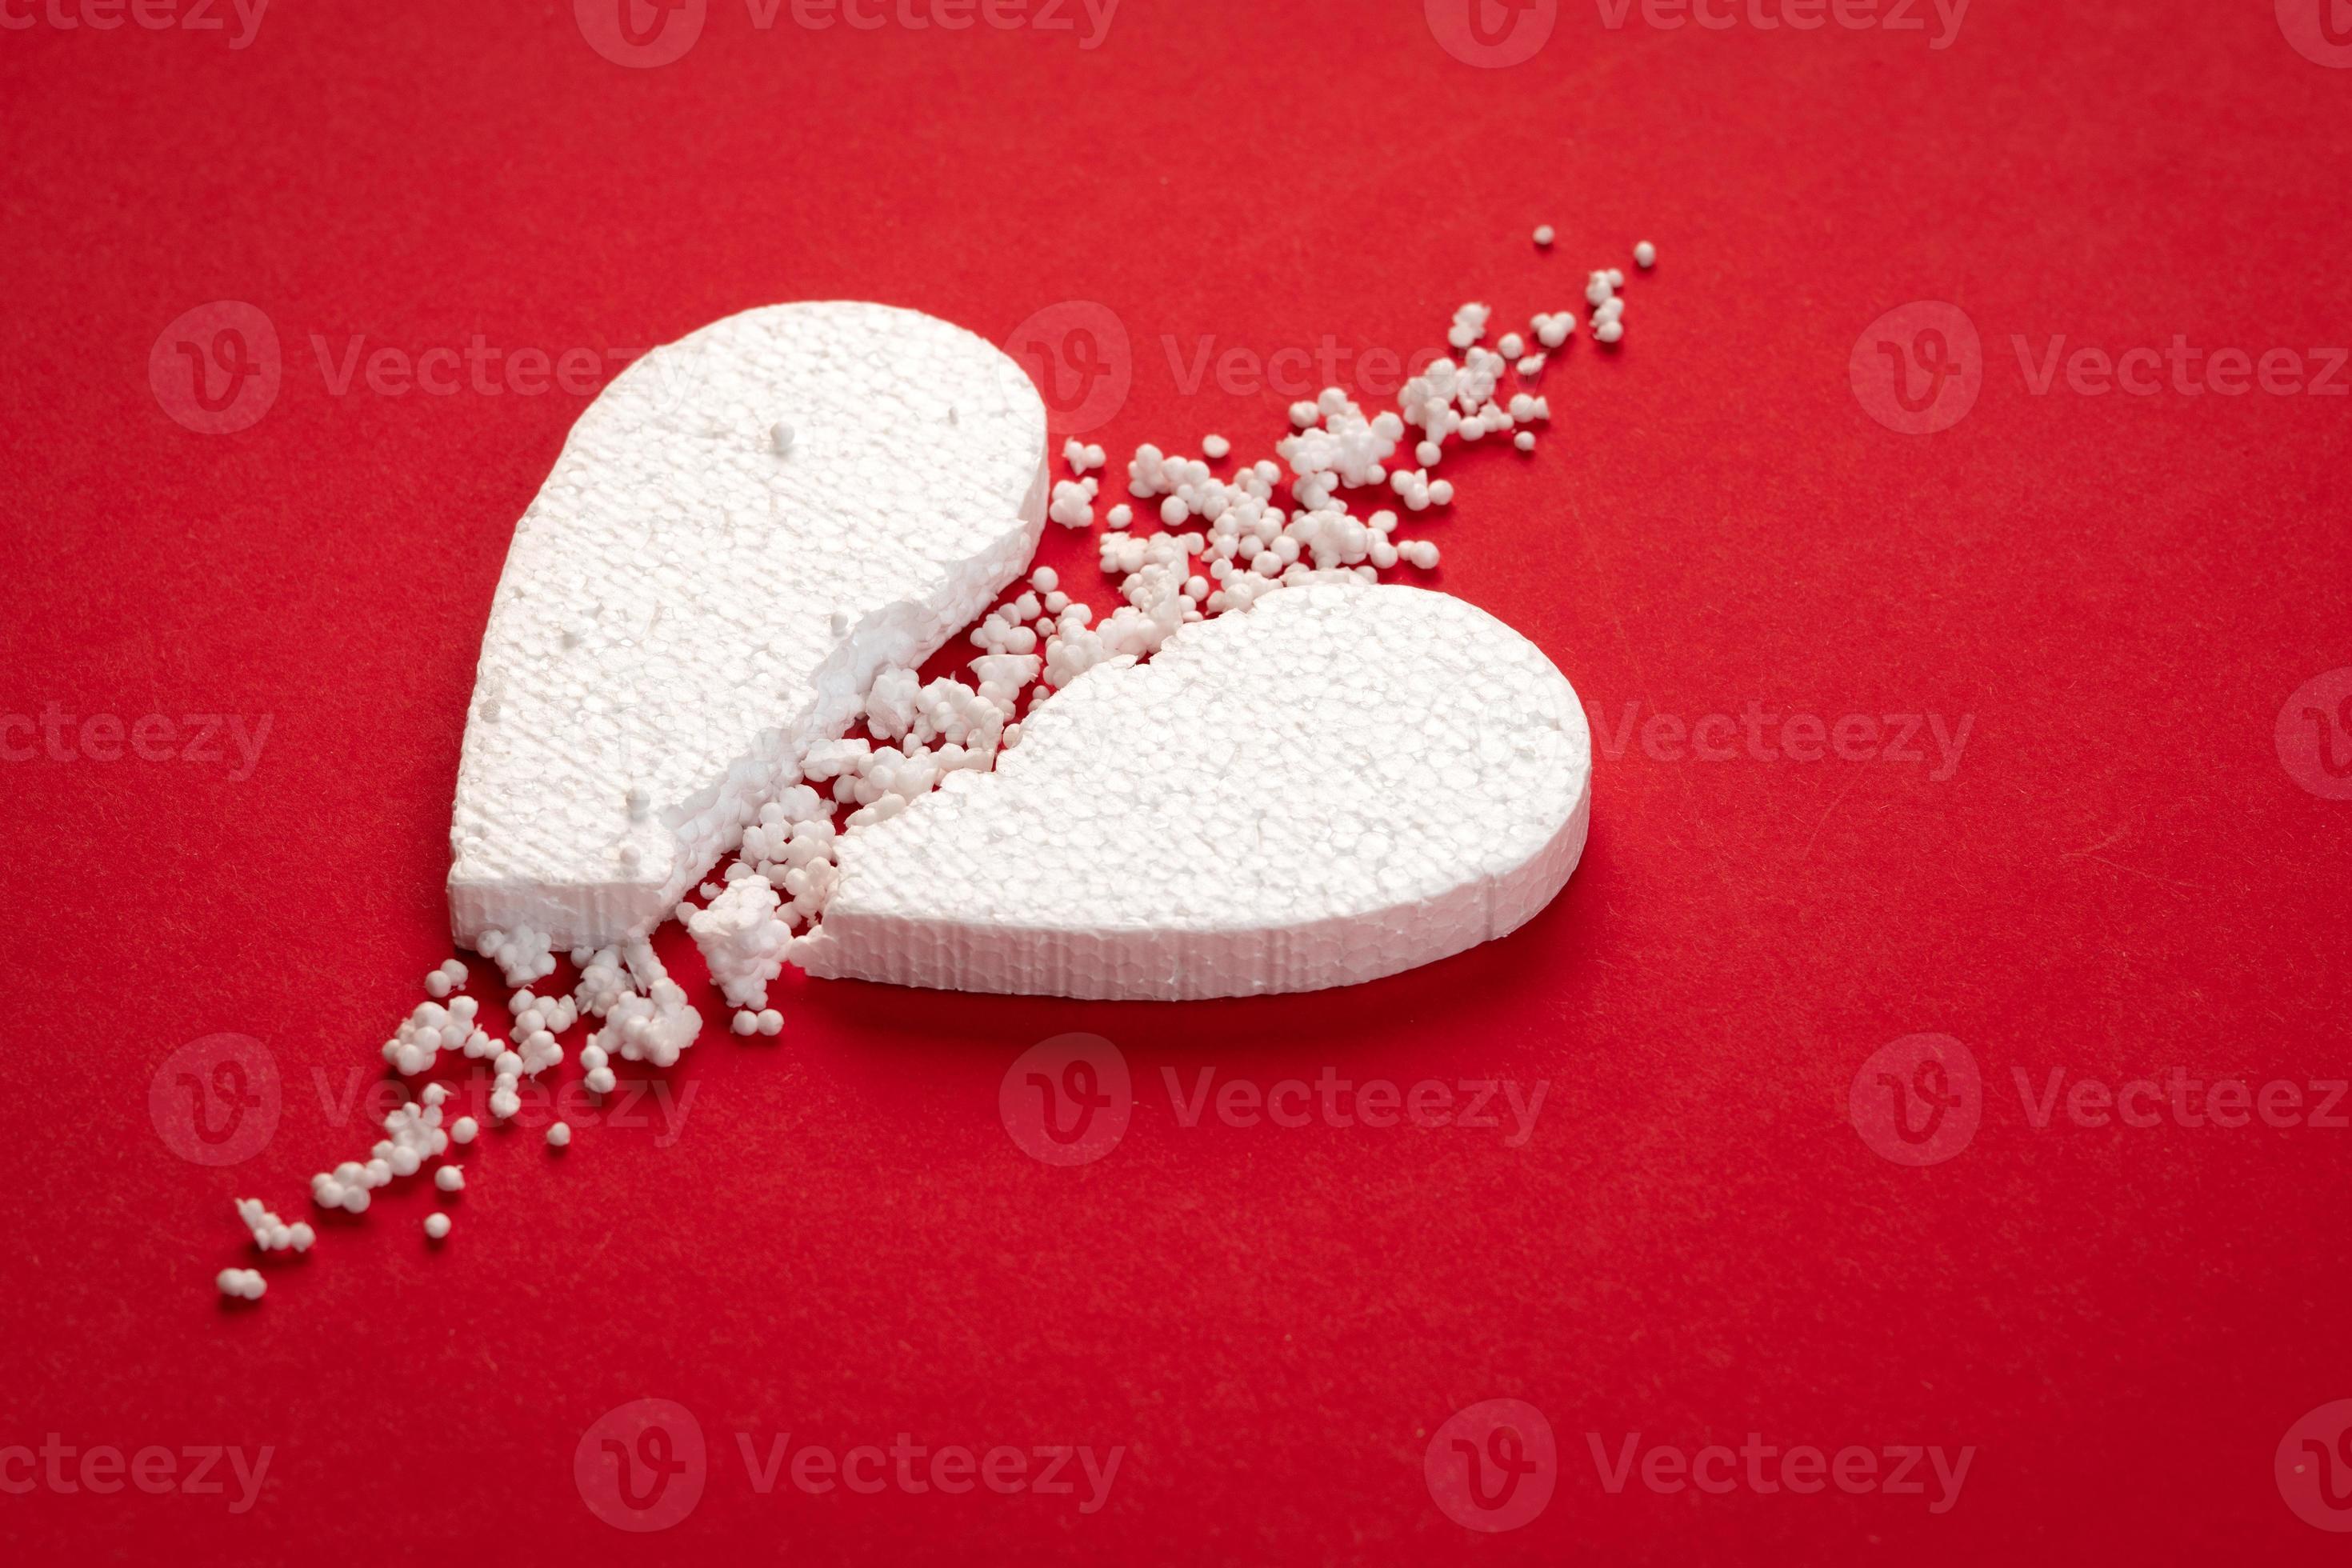 cuore di polistirolo bianco rotto su uno sfondo di carta rossa da vicino  6401356 Stock Photo su Vecteezy